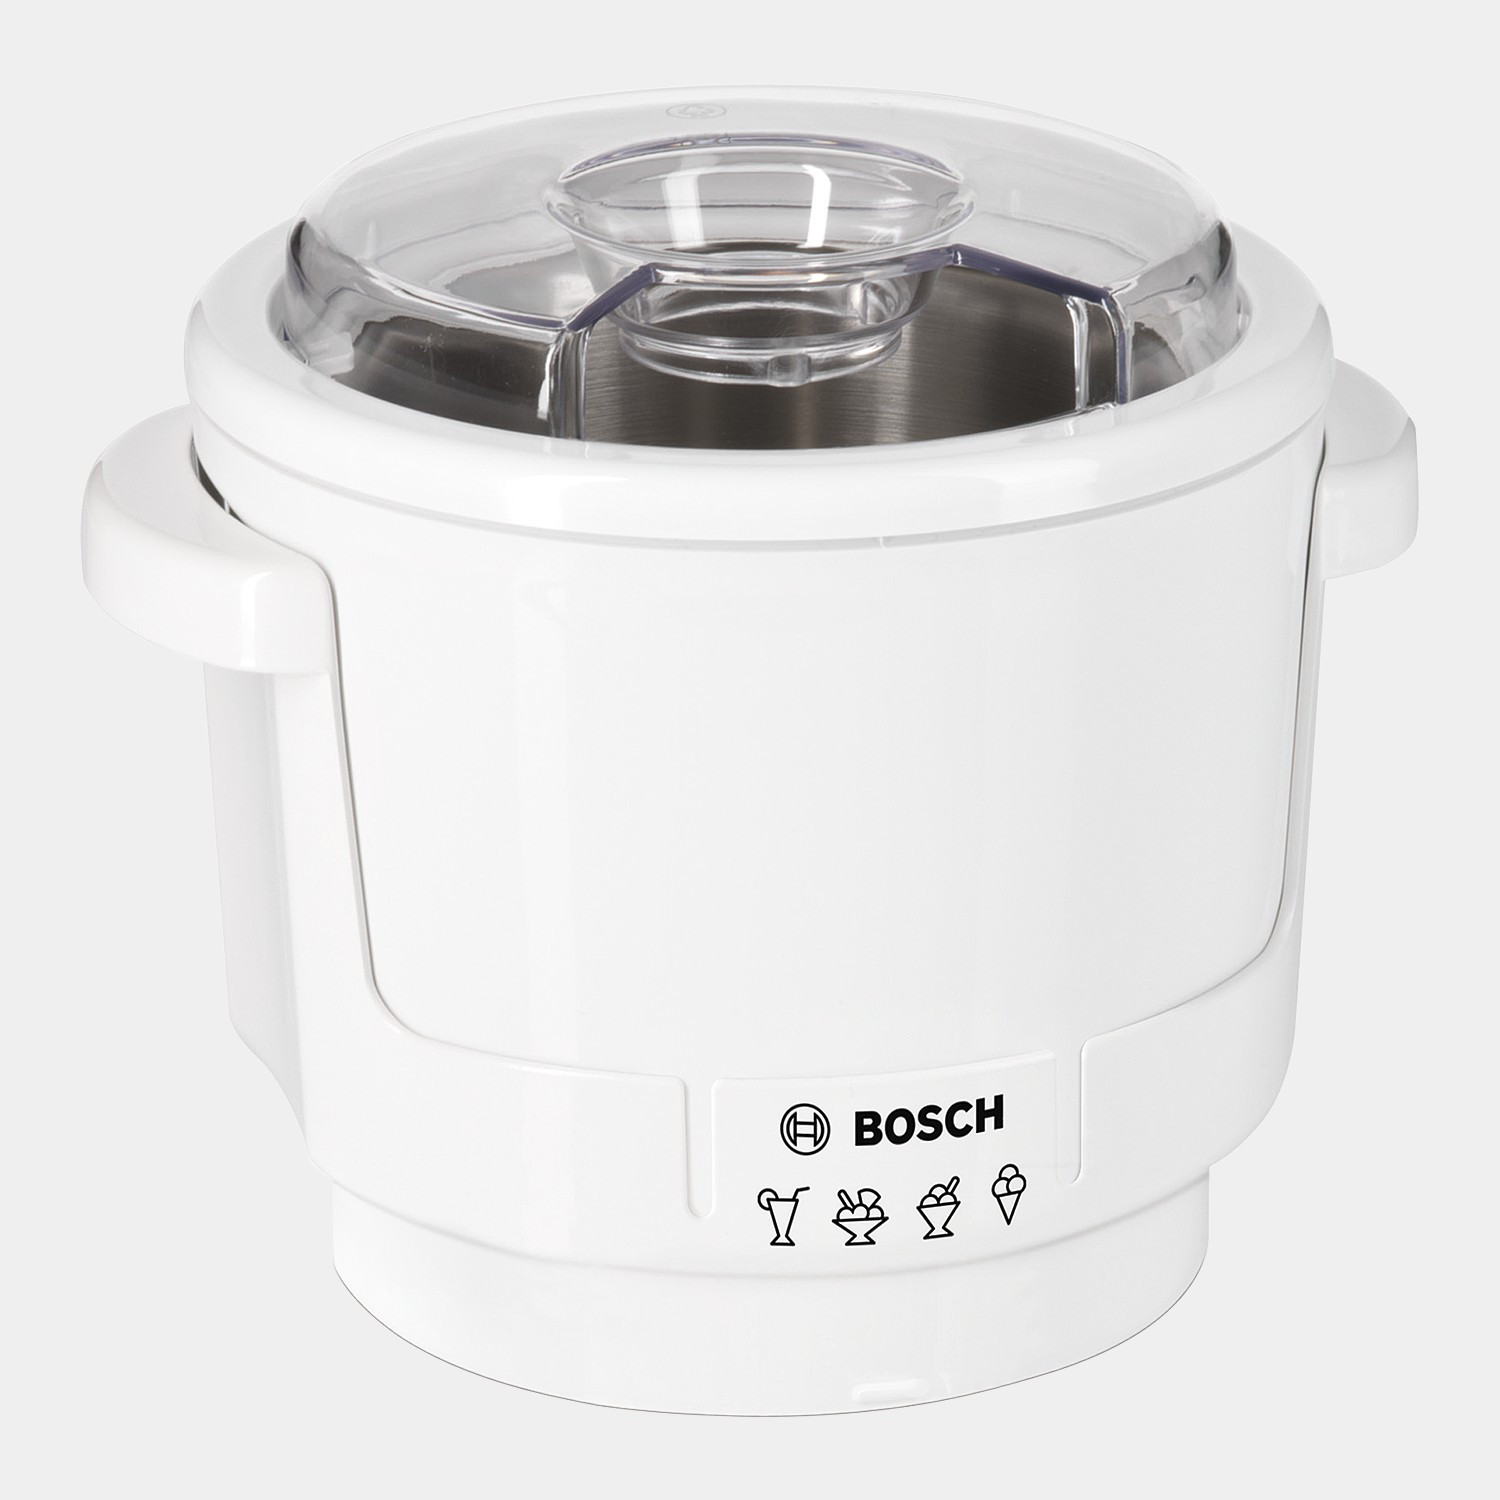 Bosch Küchenmaschine Zubehör
 Bosch Eisbereiter MUZ5EB2 Zubehör zur Küchenmaschine MUM5